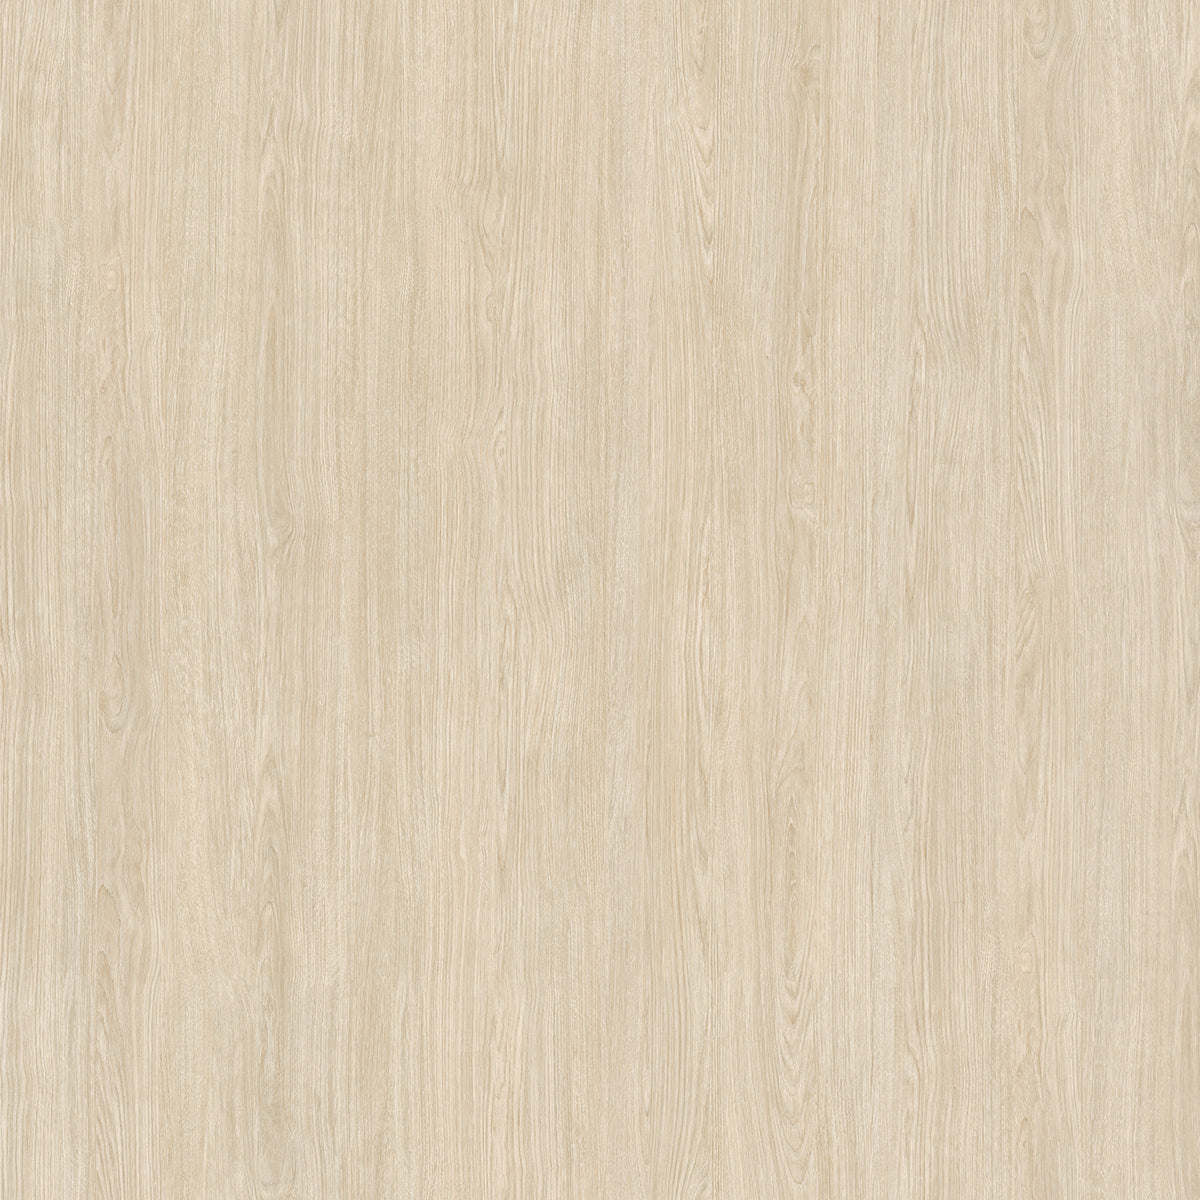 Cover Styl Wood Range - NF40 - Classic Oak